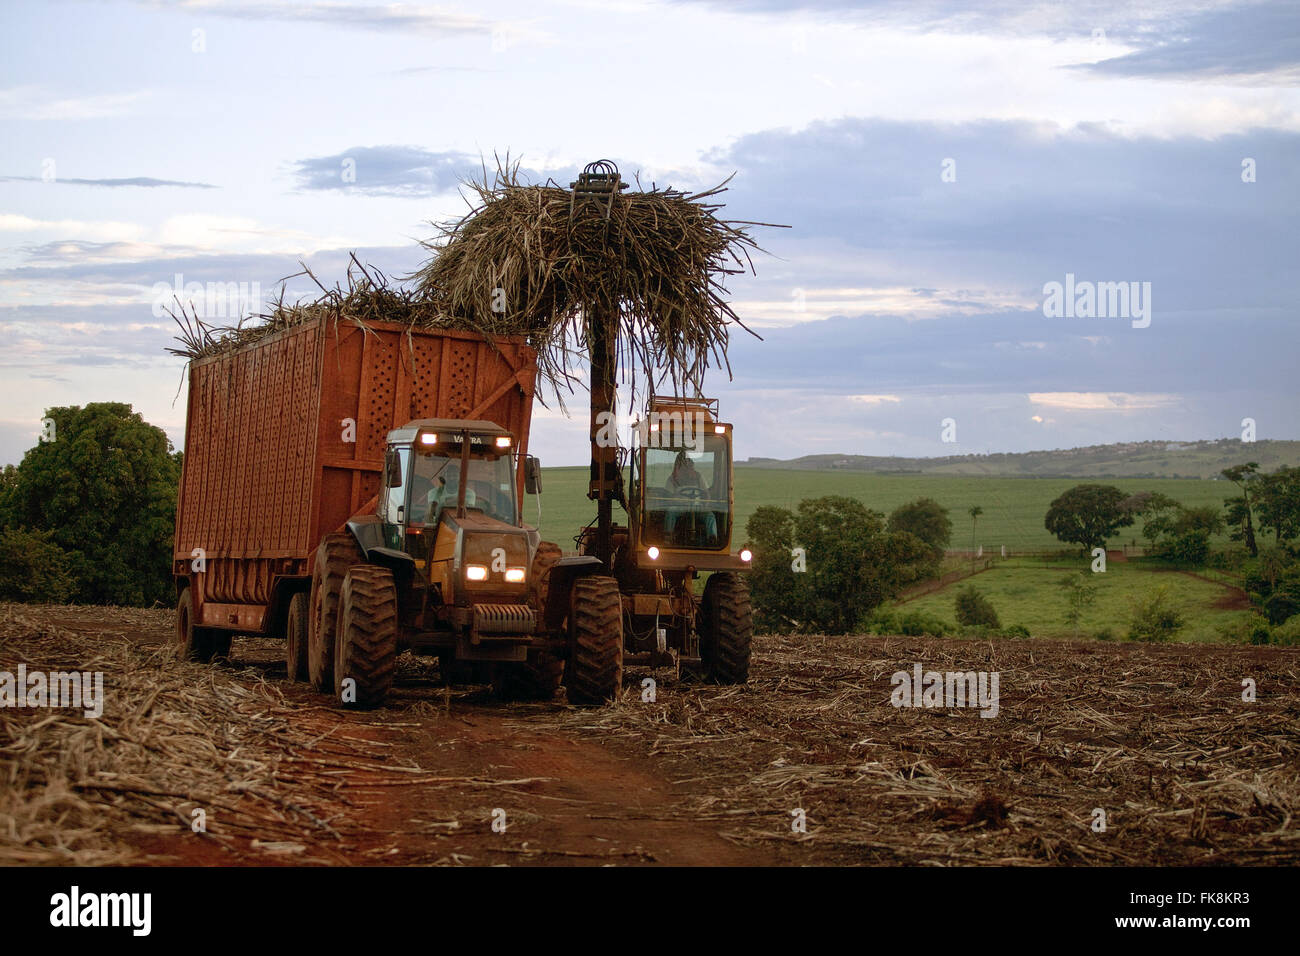 La collecte du tracteur après la récolte mécanique de la canne à sucre à la campagne en fin d'après-midi Banque D'Images